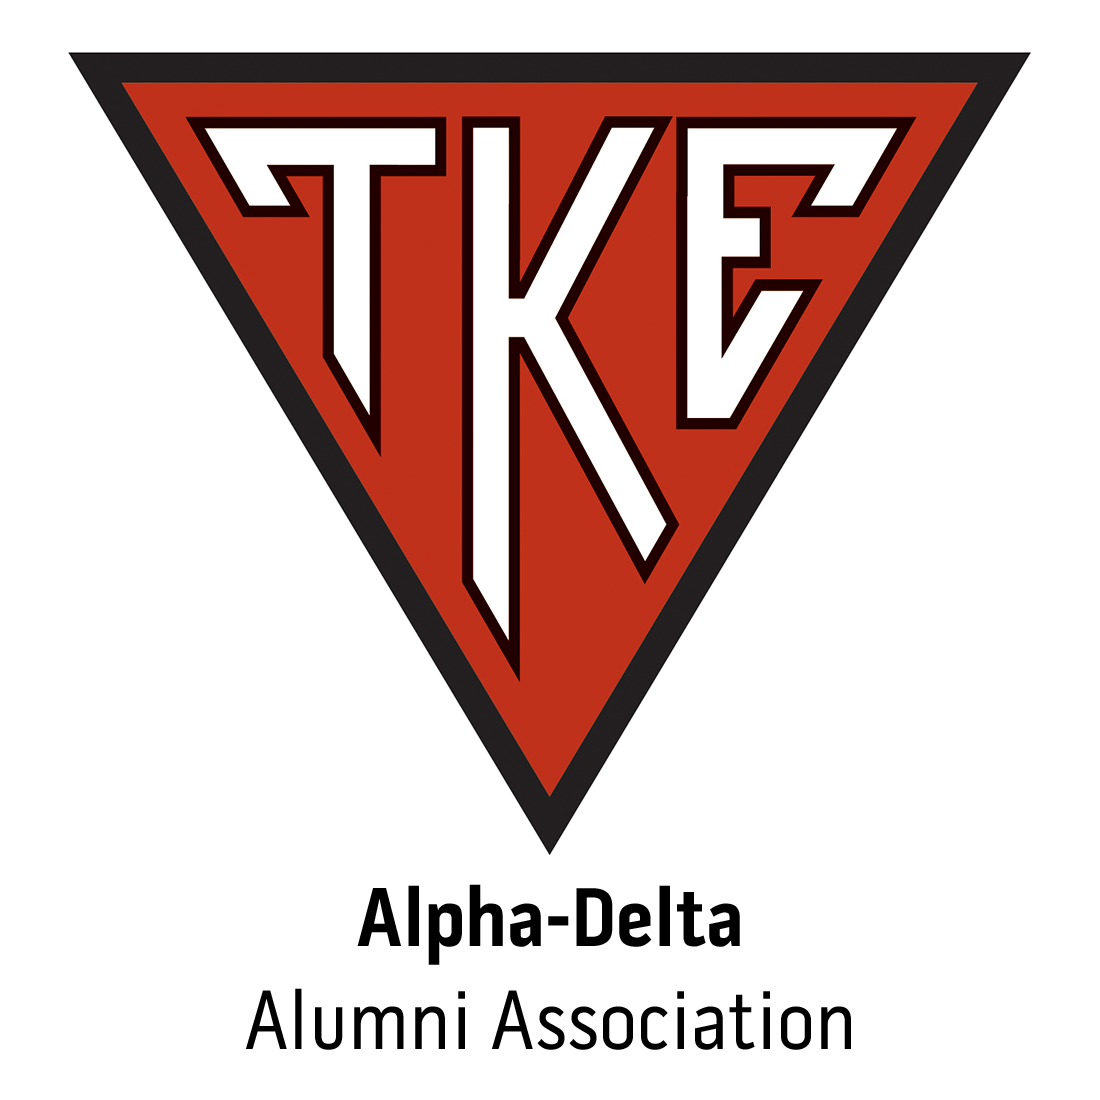 Alpha-Delta Alumni Association at University of Idaho